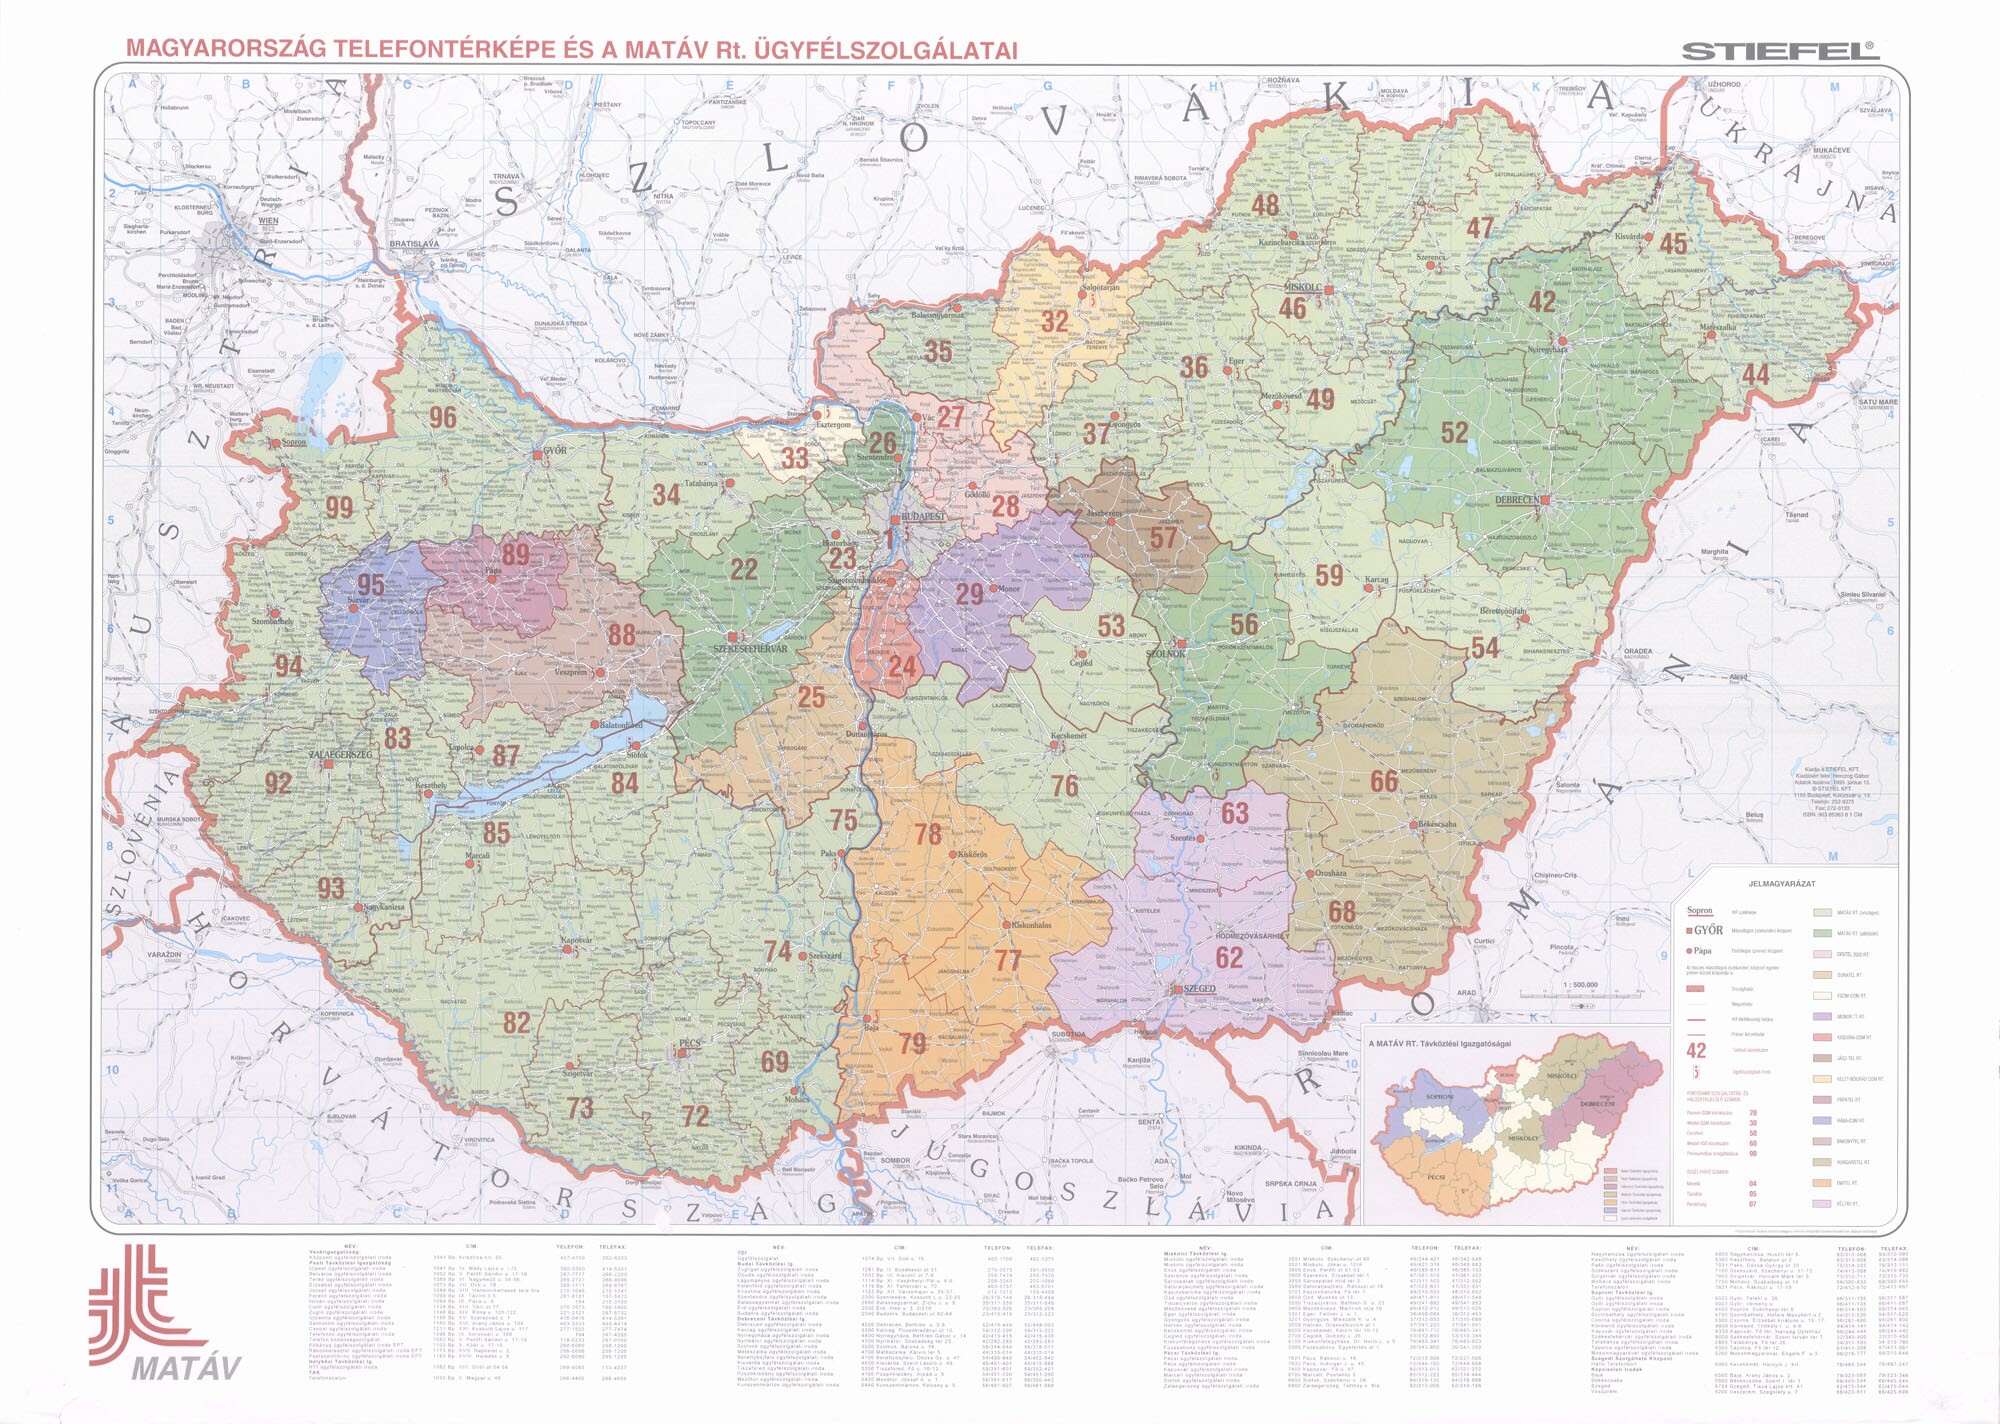 Magyarország telefontérképe és a MATÁV Rt. ügyfélszolgálatai (Postamúzeum CC BY-NC-SA)